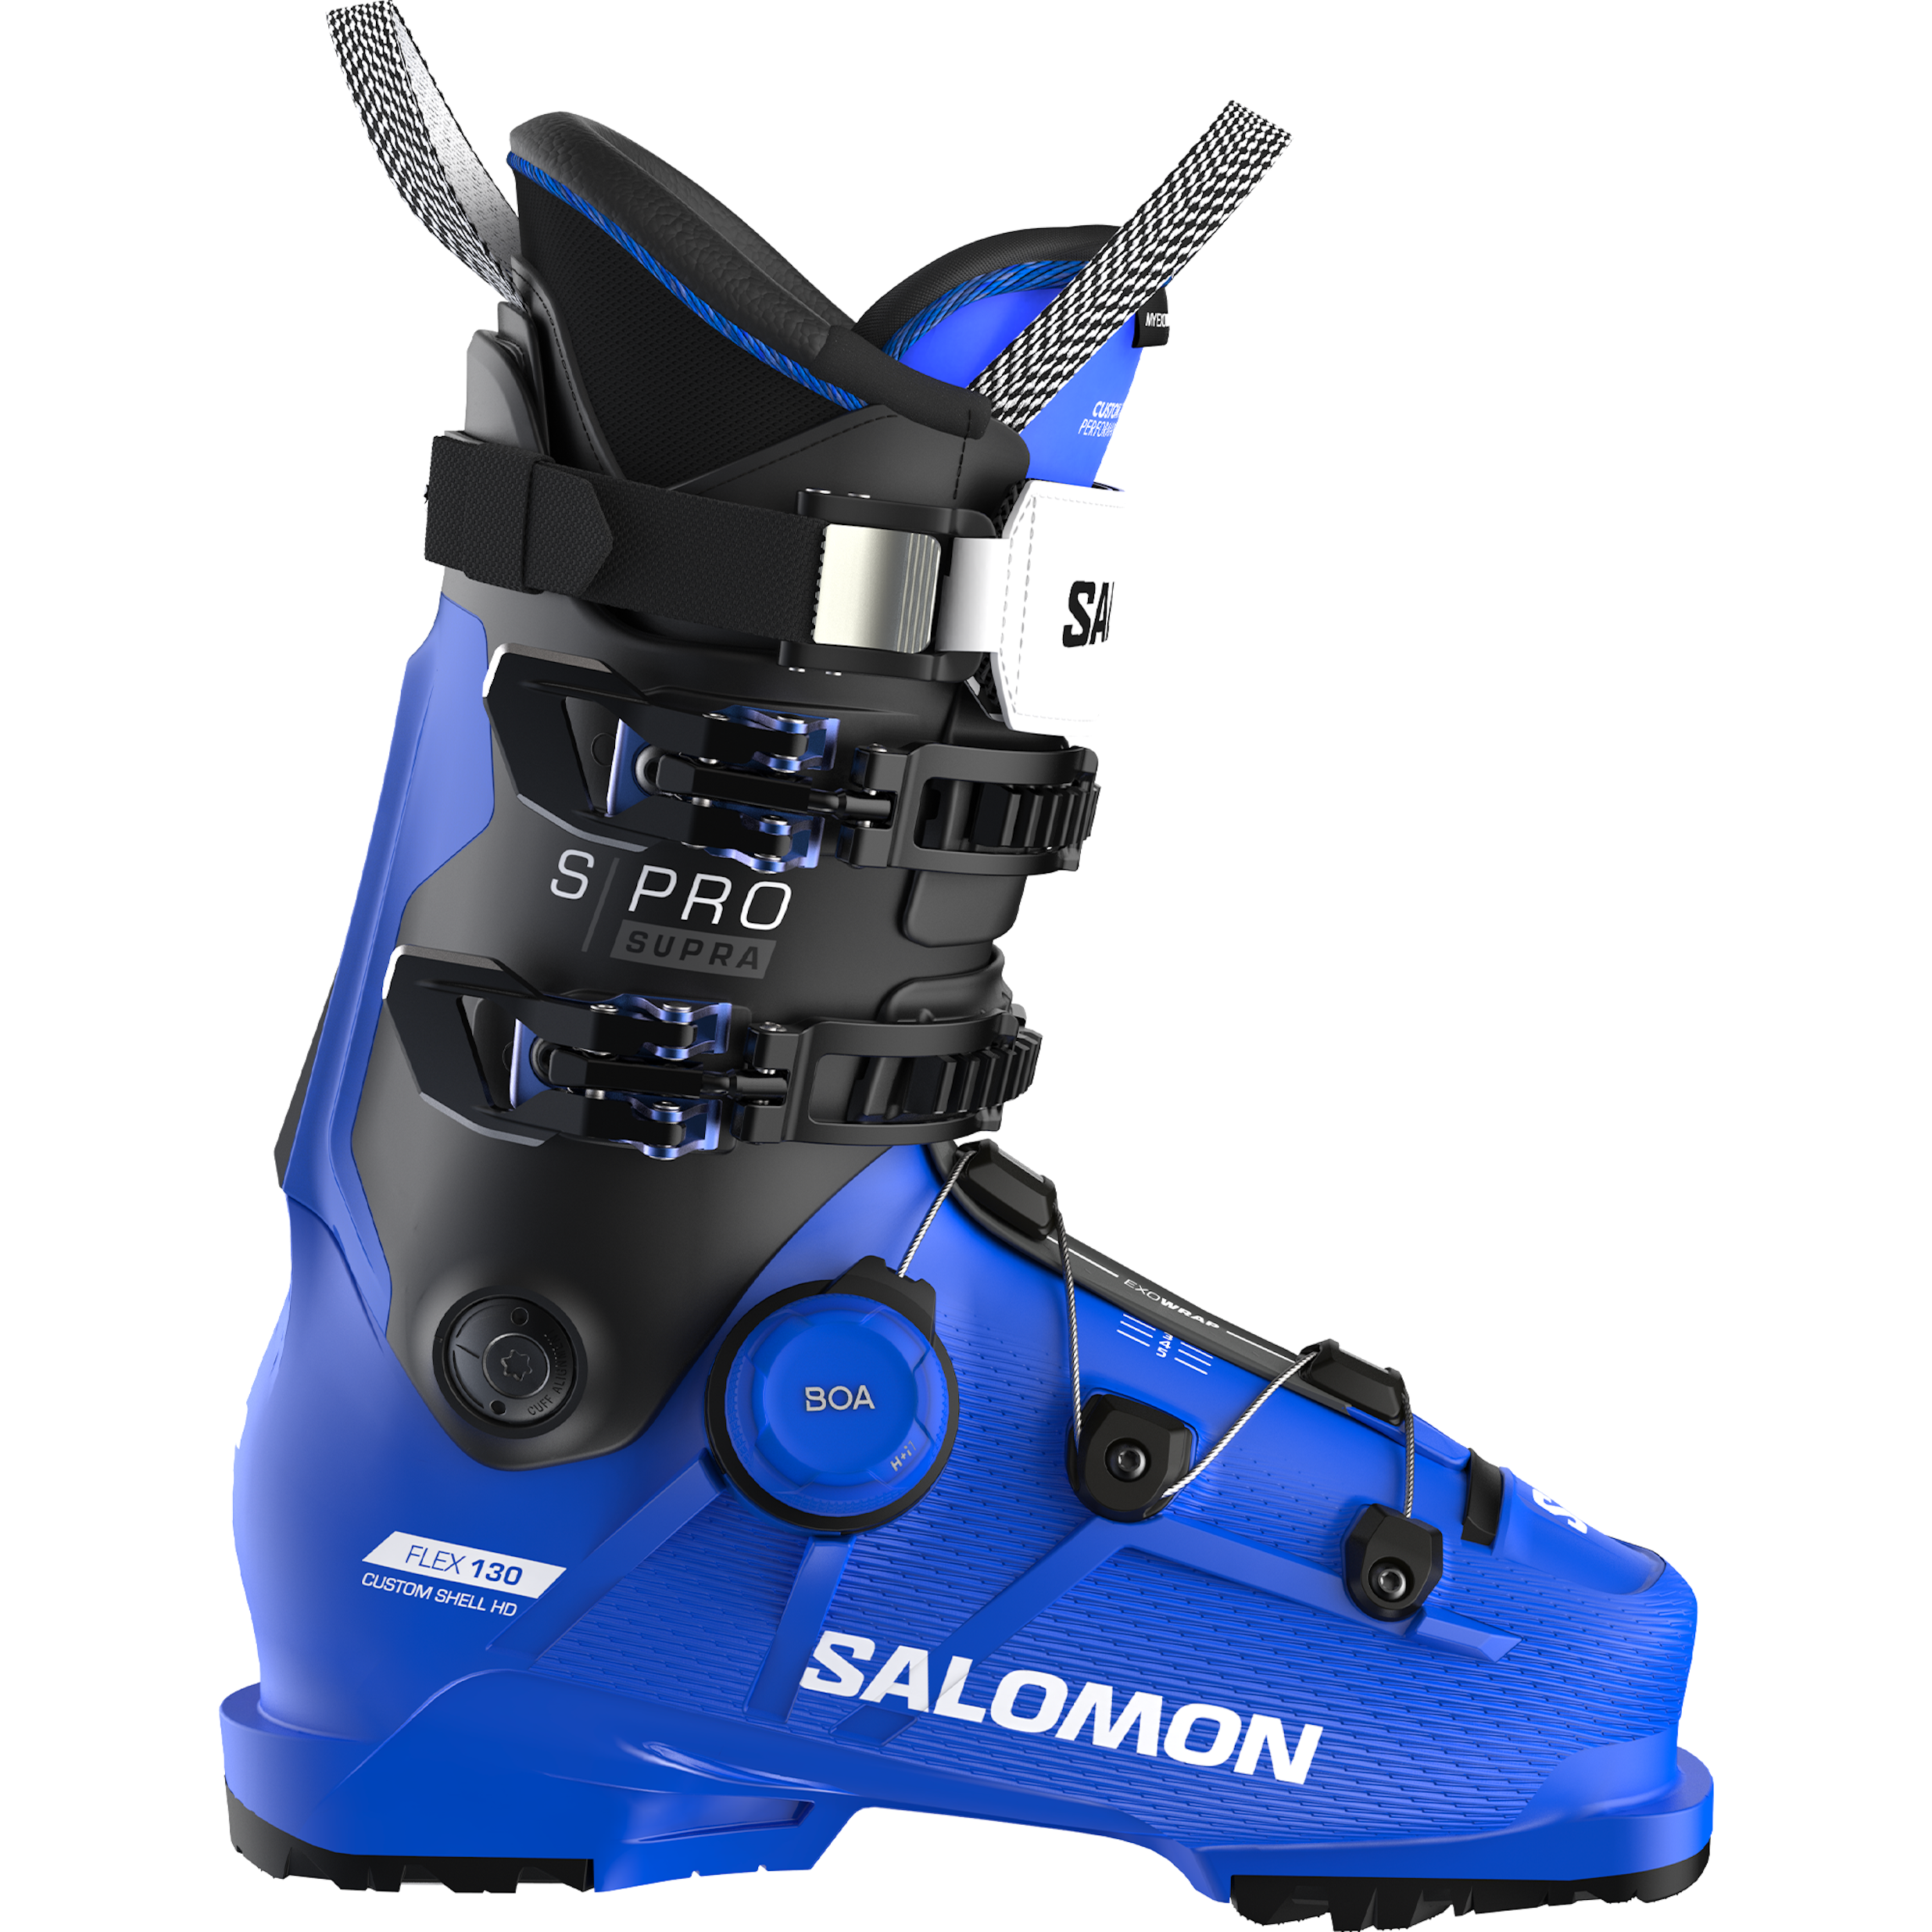 Men's Salomon S/Pro Supra BOA 130 ski boot, mostly blue with black on top cuff. New BOA closure system.